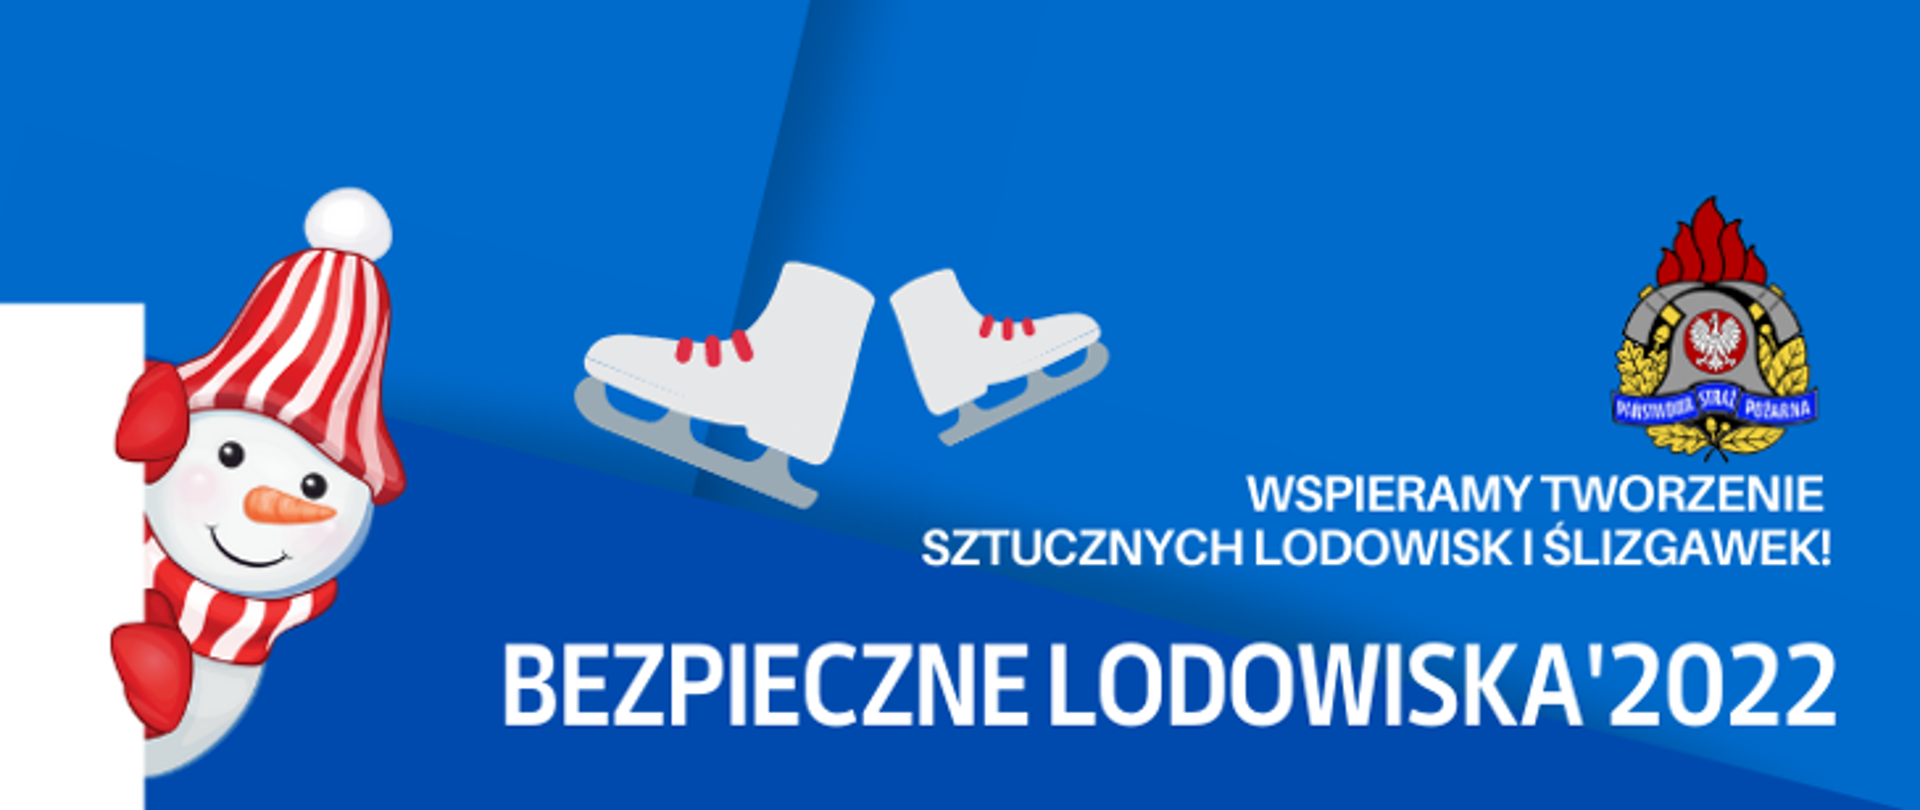 Akcja bezpieczne lodowiska 2022. Logo akcji.